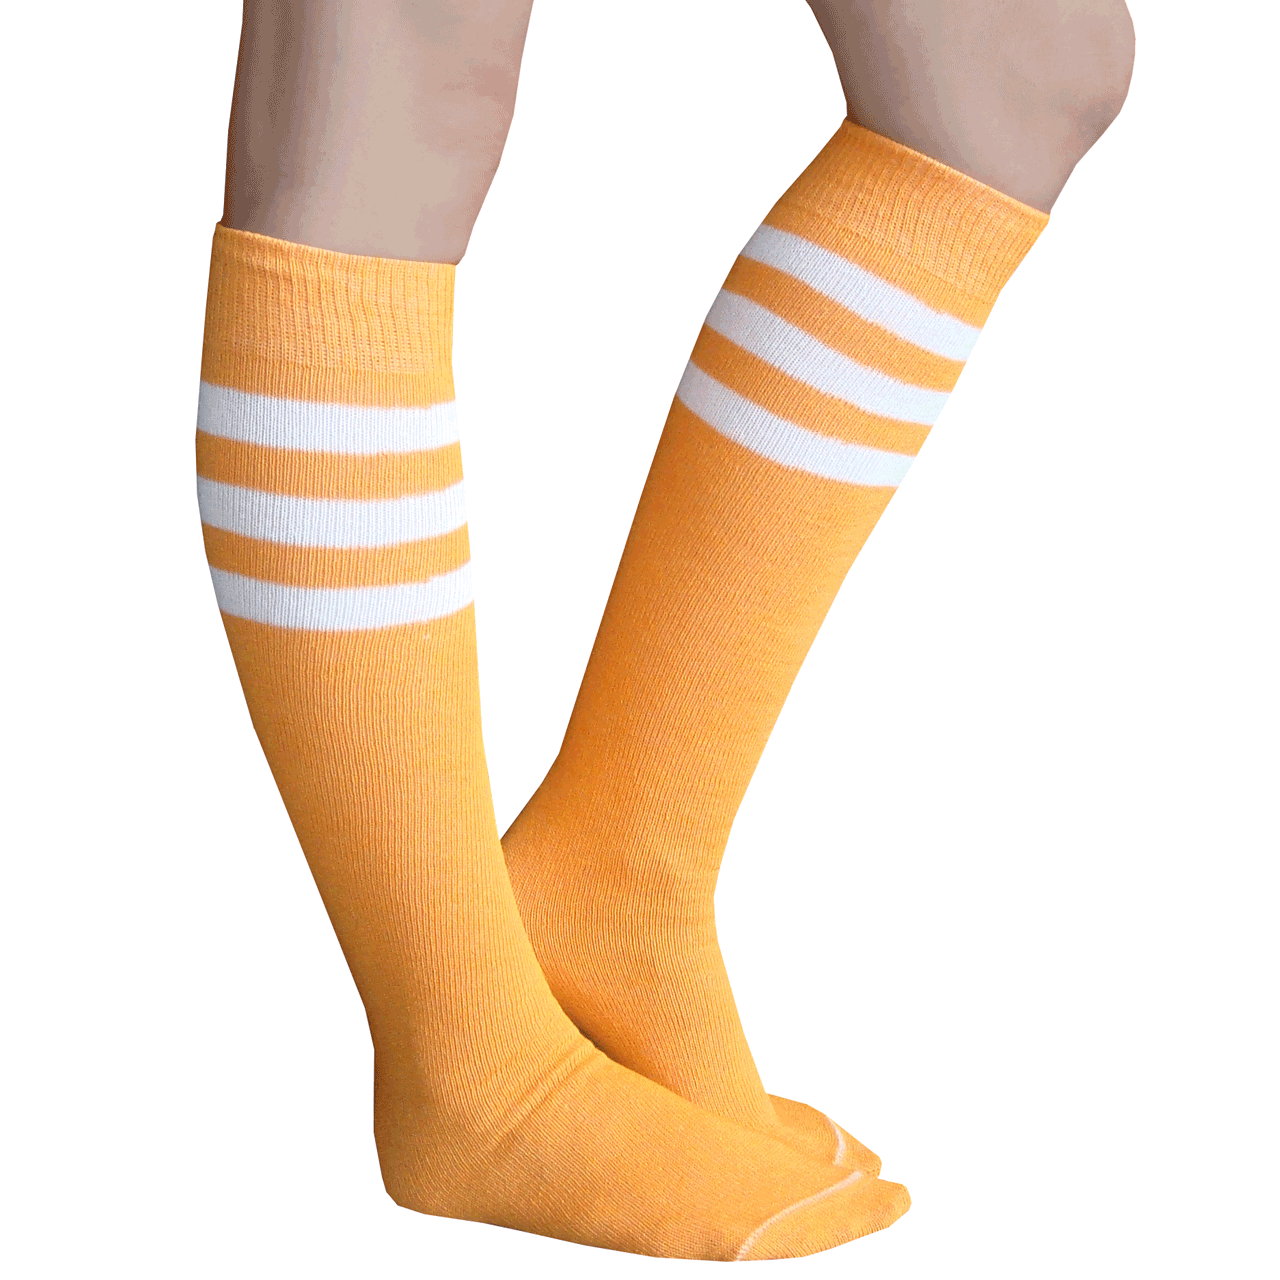 Tangerine Tube Socks